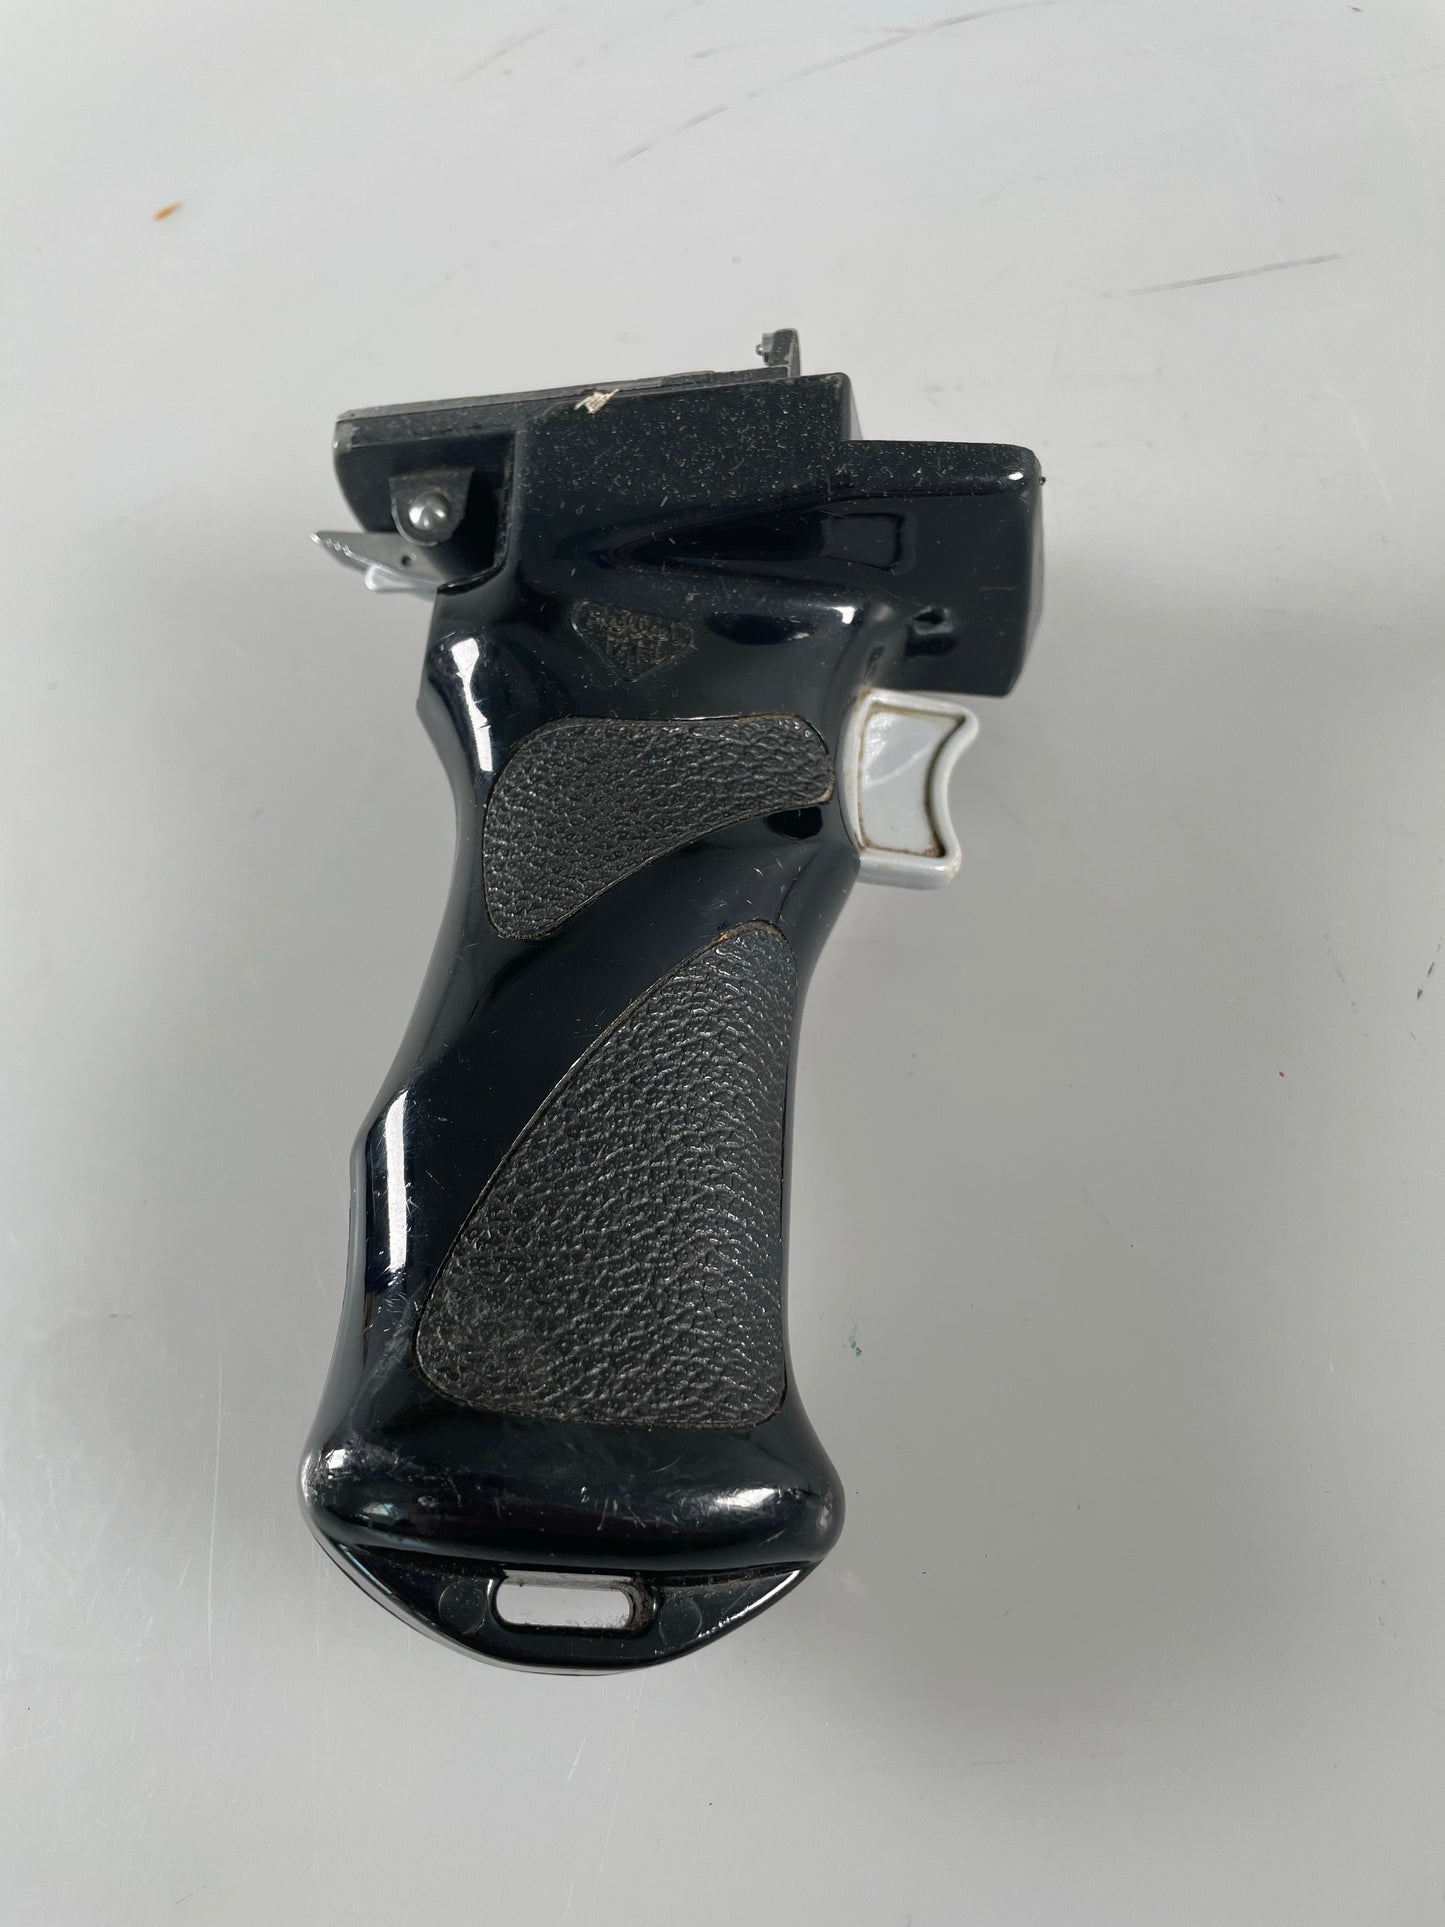 Rollei Rolleiflex TLR Trigger Pistol Grip